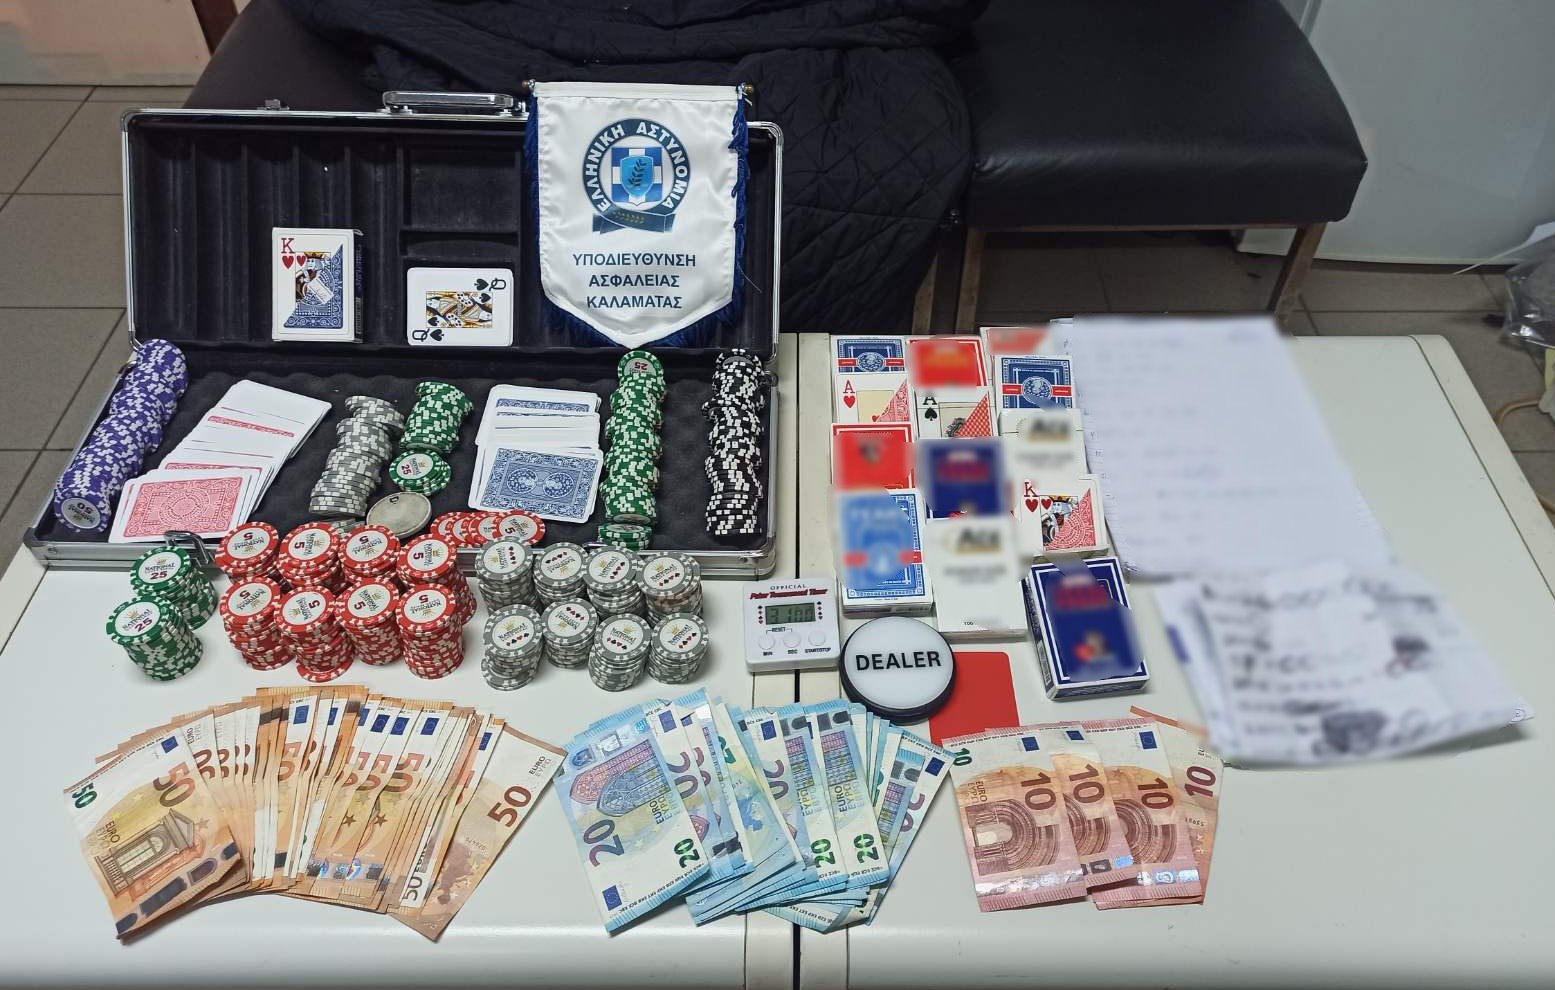 Συνελήφθησαν έντεκα άτομα για διενέργεια παράνομου τυχερού παιχνιδιού στη Μεσσηνία